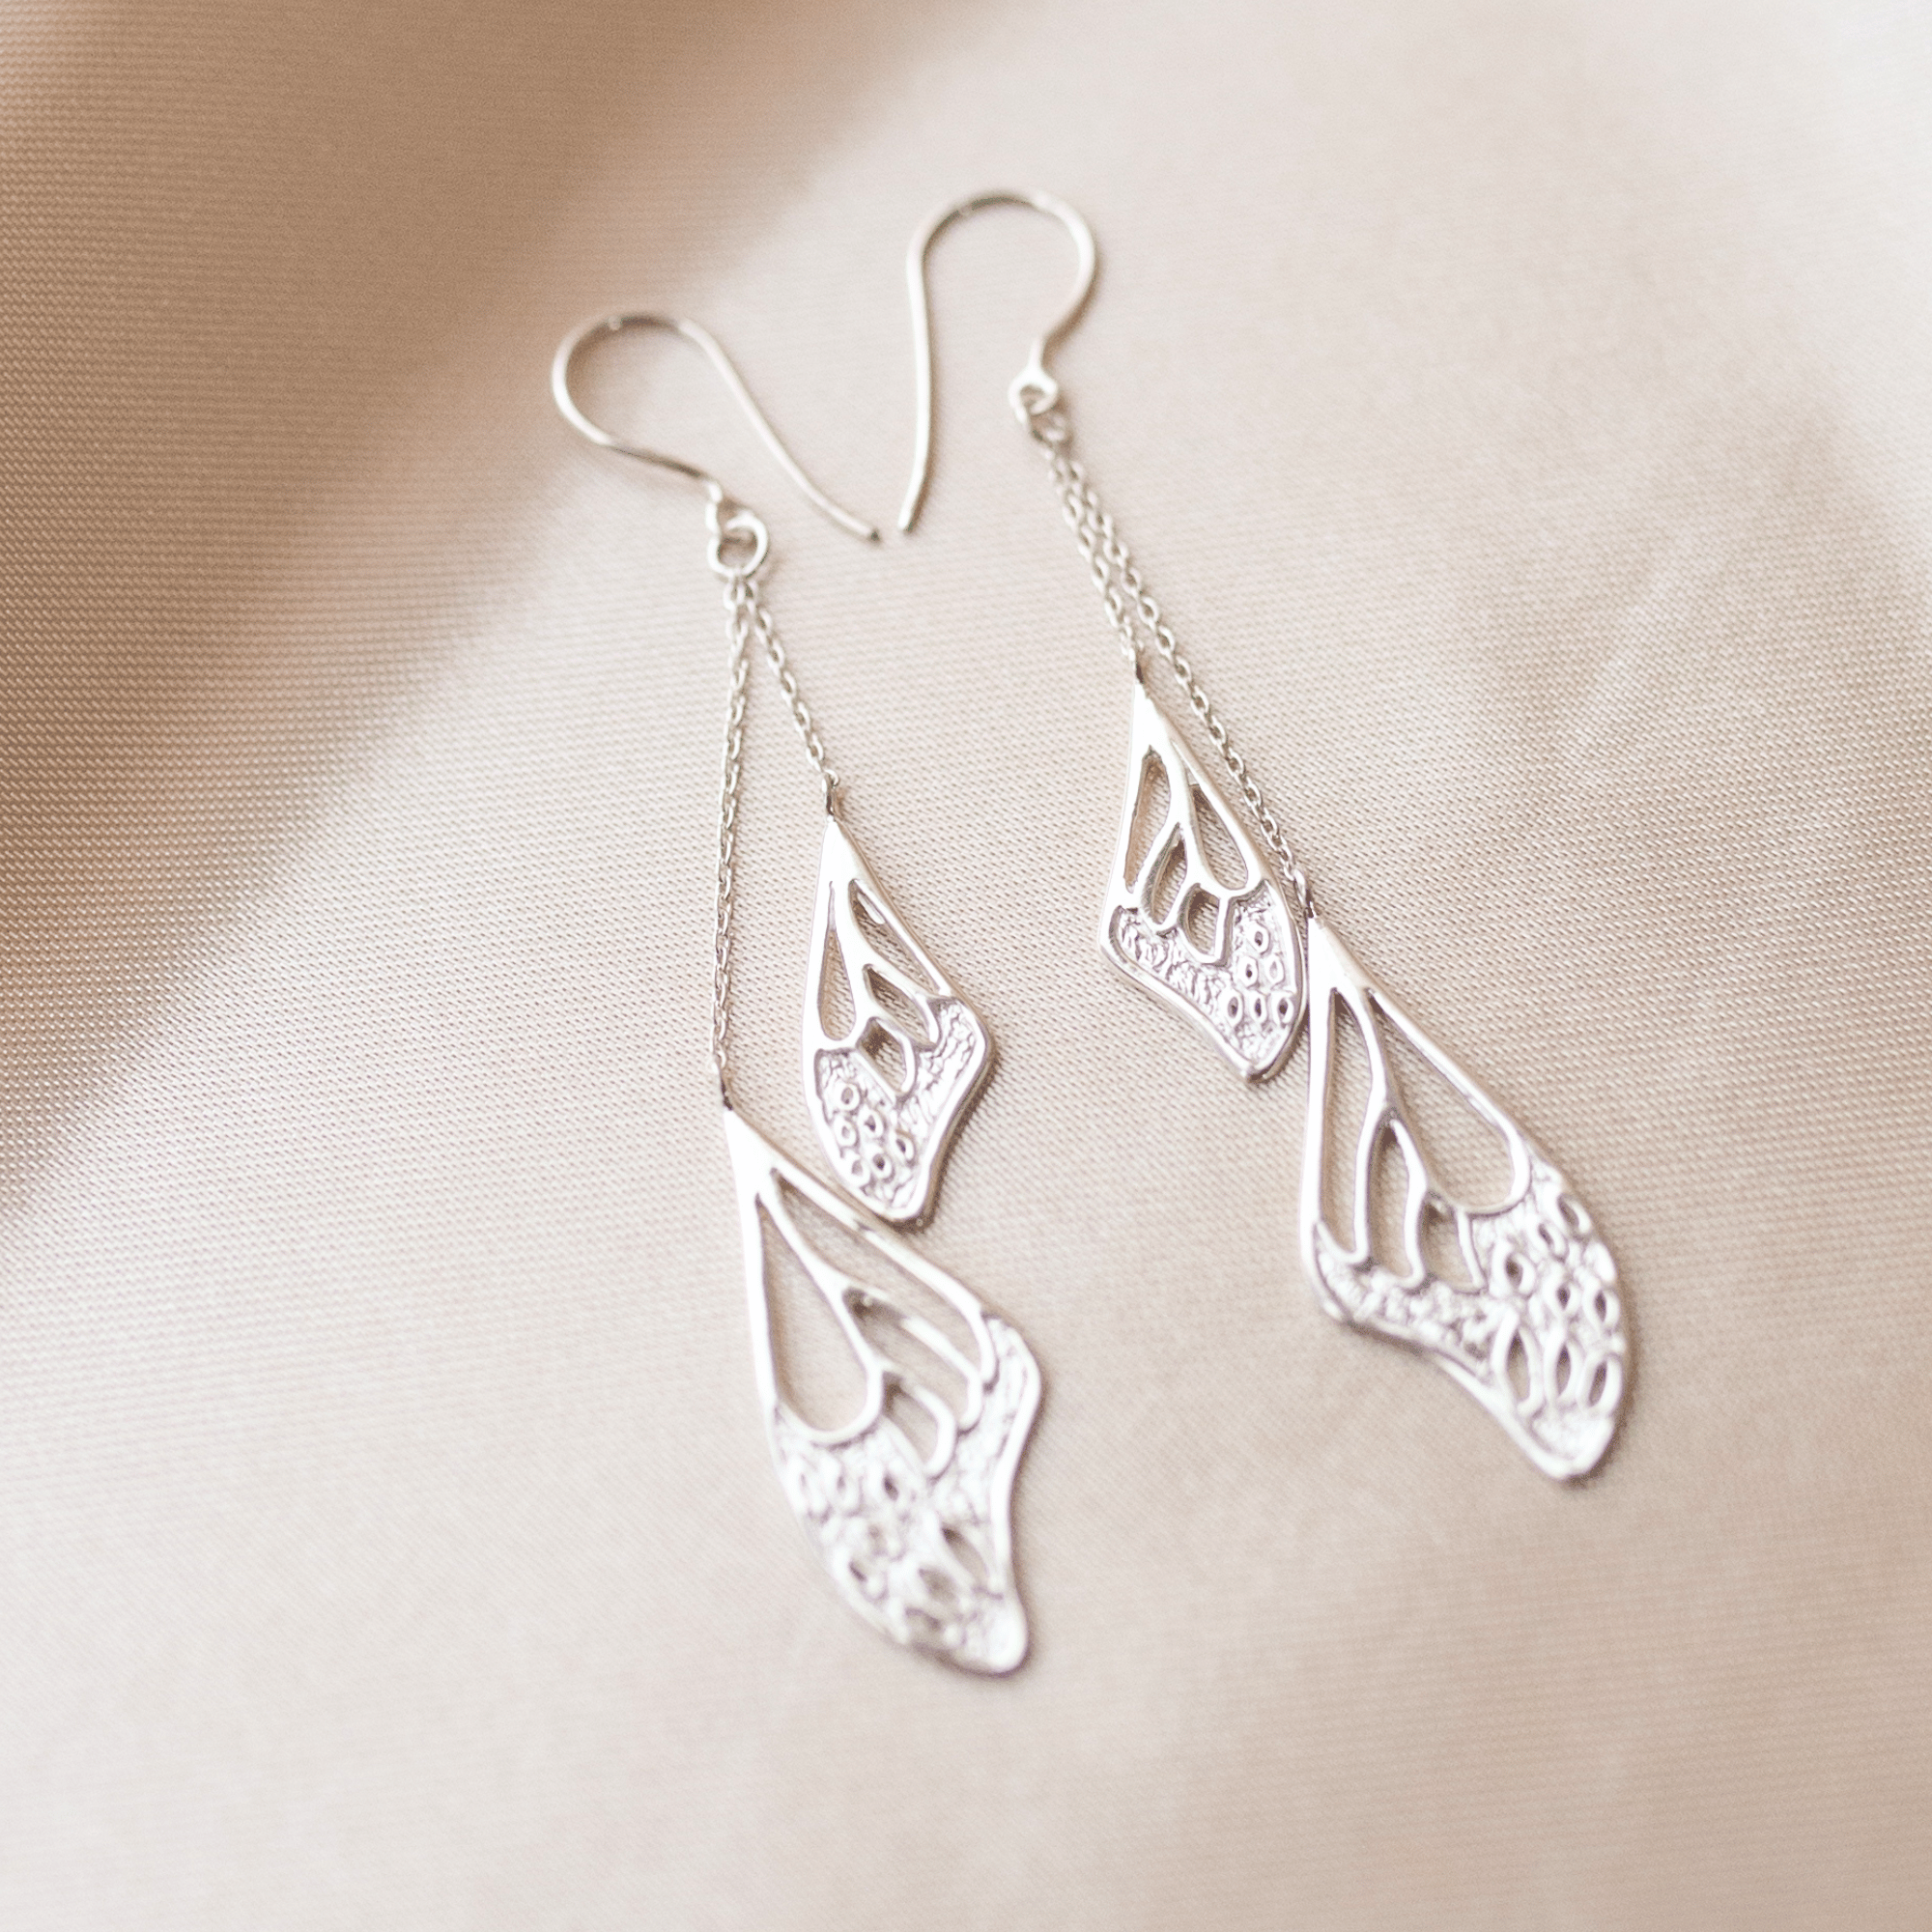 Freedom Butterfly Wing Earrings in Sterling Silver | Jewelry Evolution8